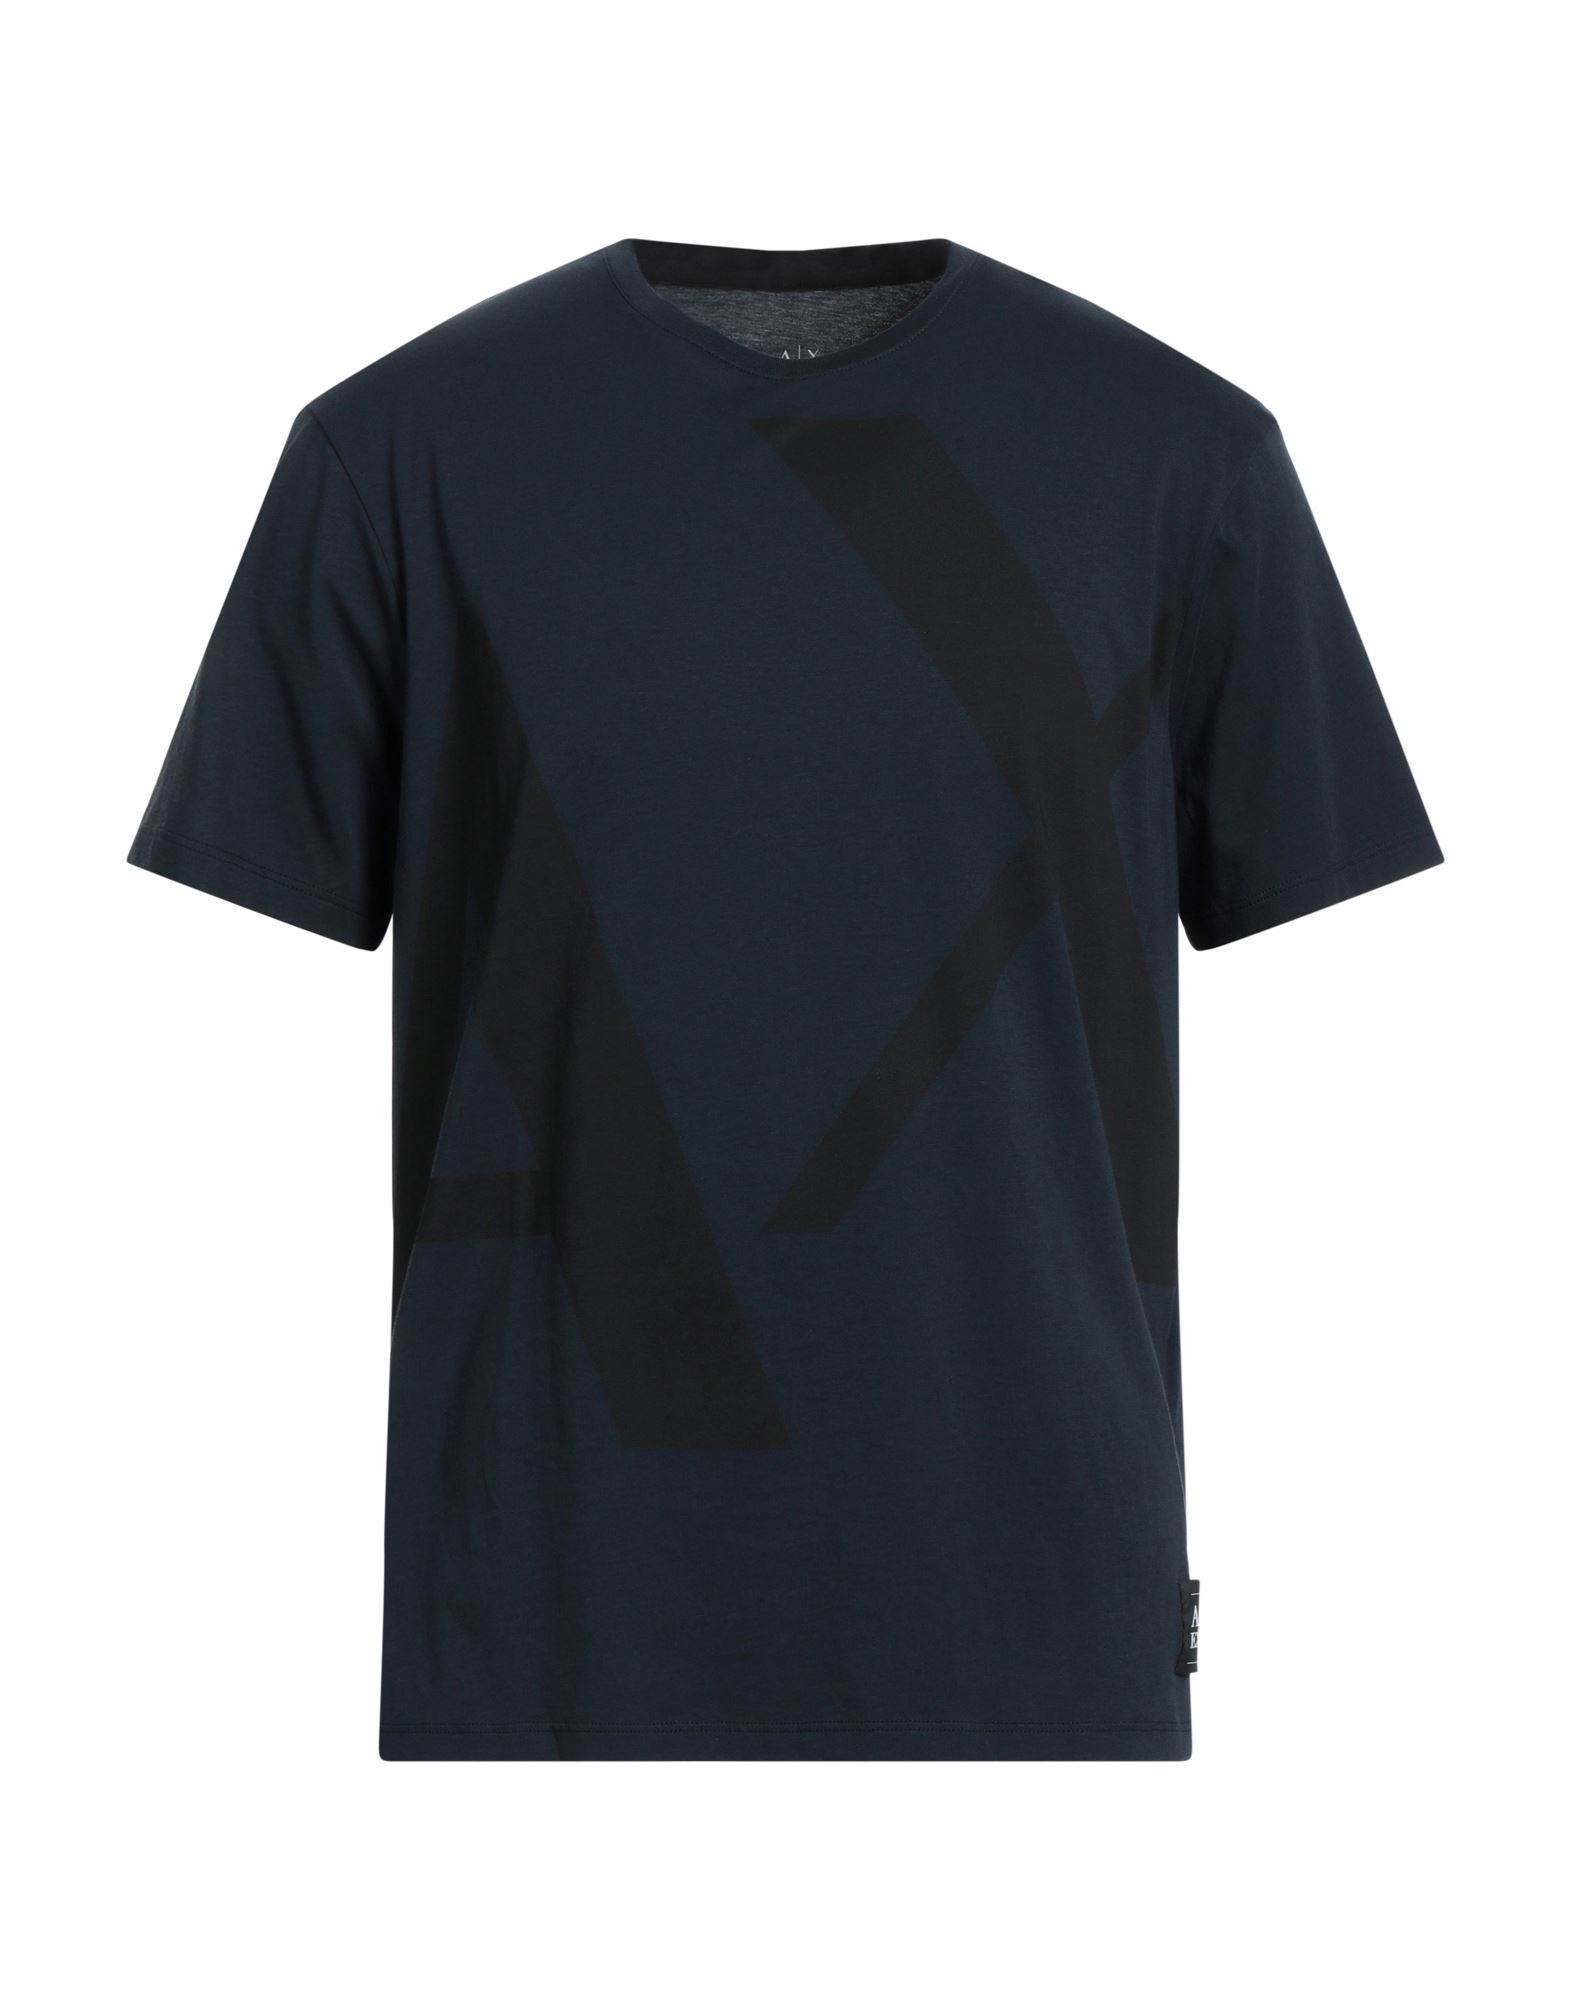 ARMANI EXCHANGE T-shirts Herren Nachtblau von ARMANI EXCHANGE